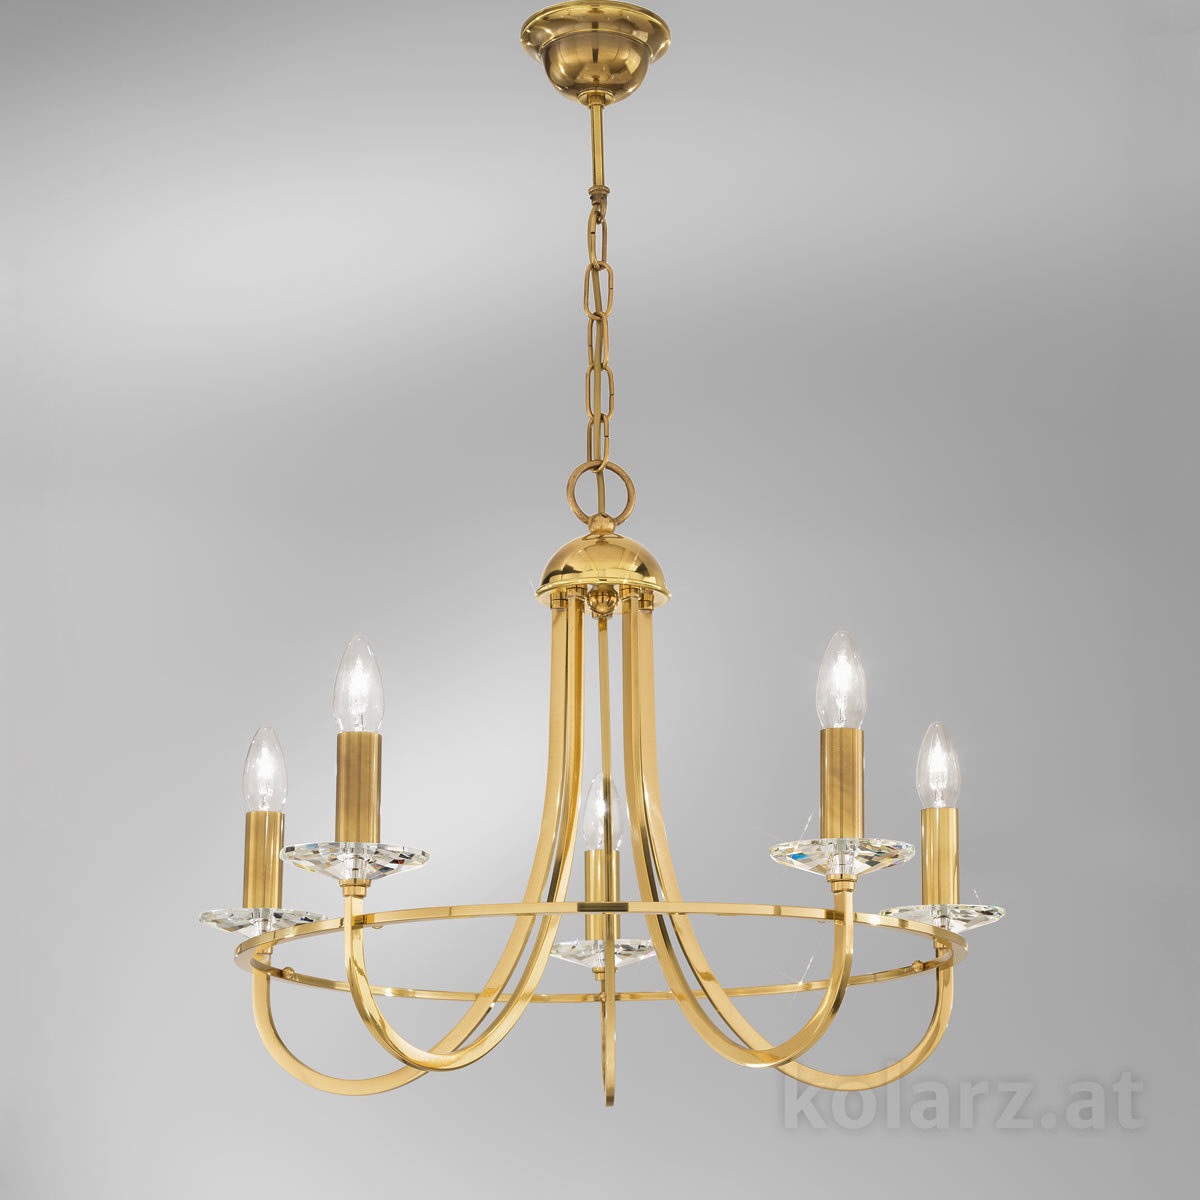 Kristall- von KOLARZ Leuchten Luster, chandelier - Imperial 330.85.8C